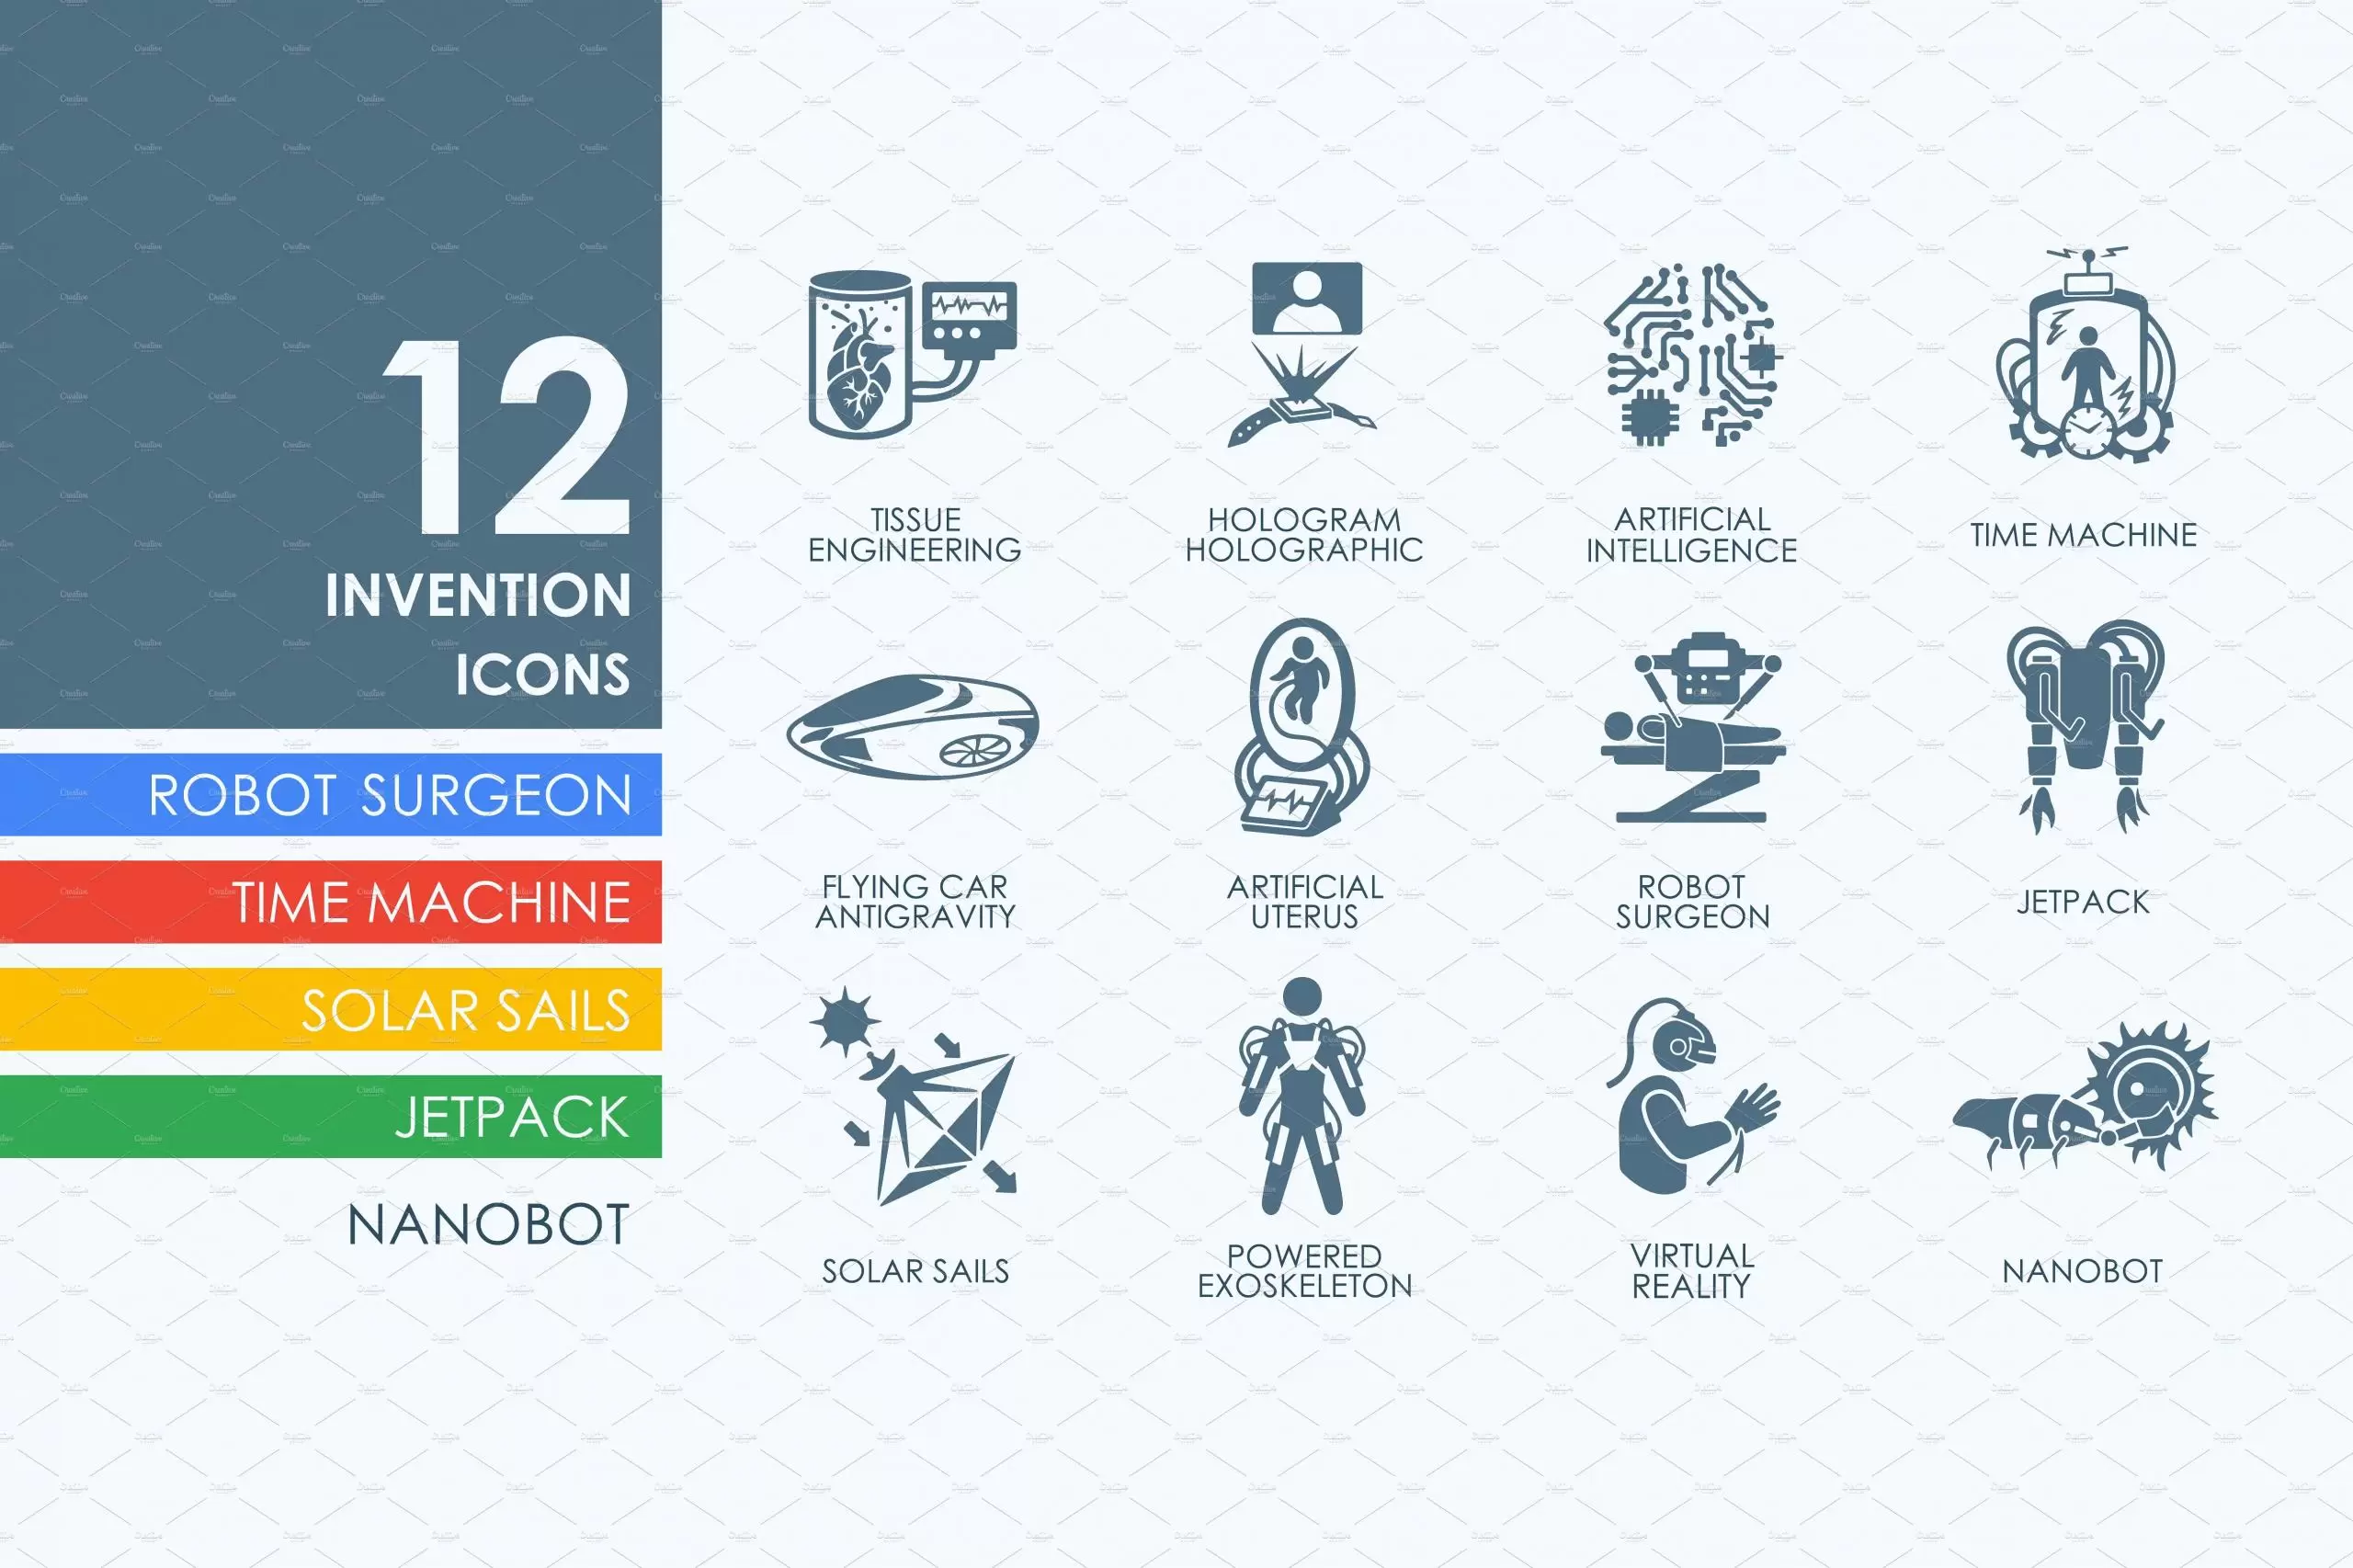 发明图标素材 12 invention icons插图